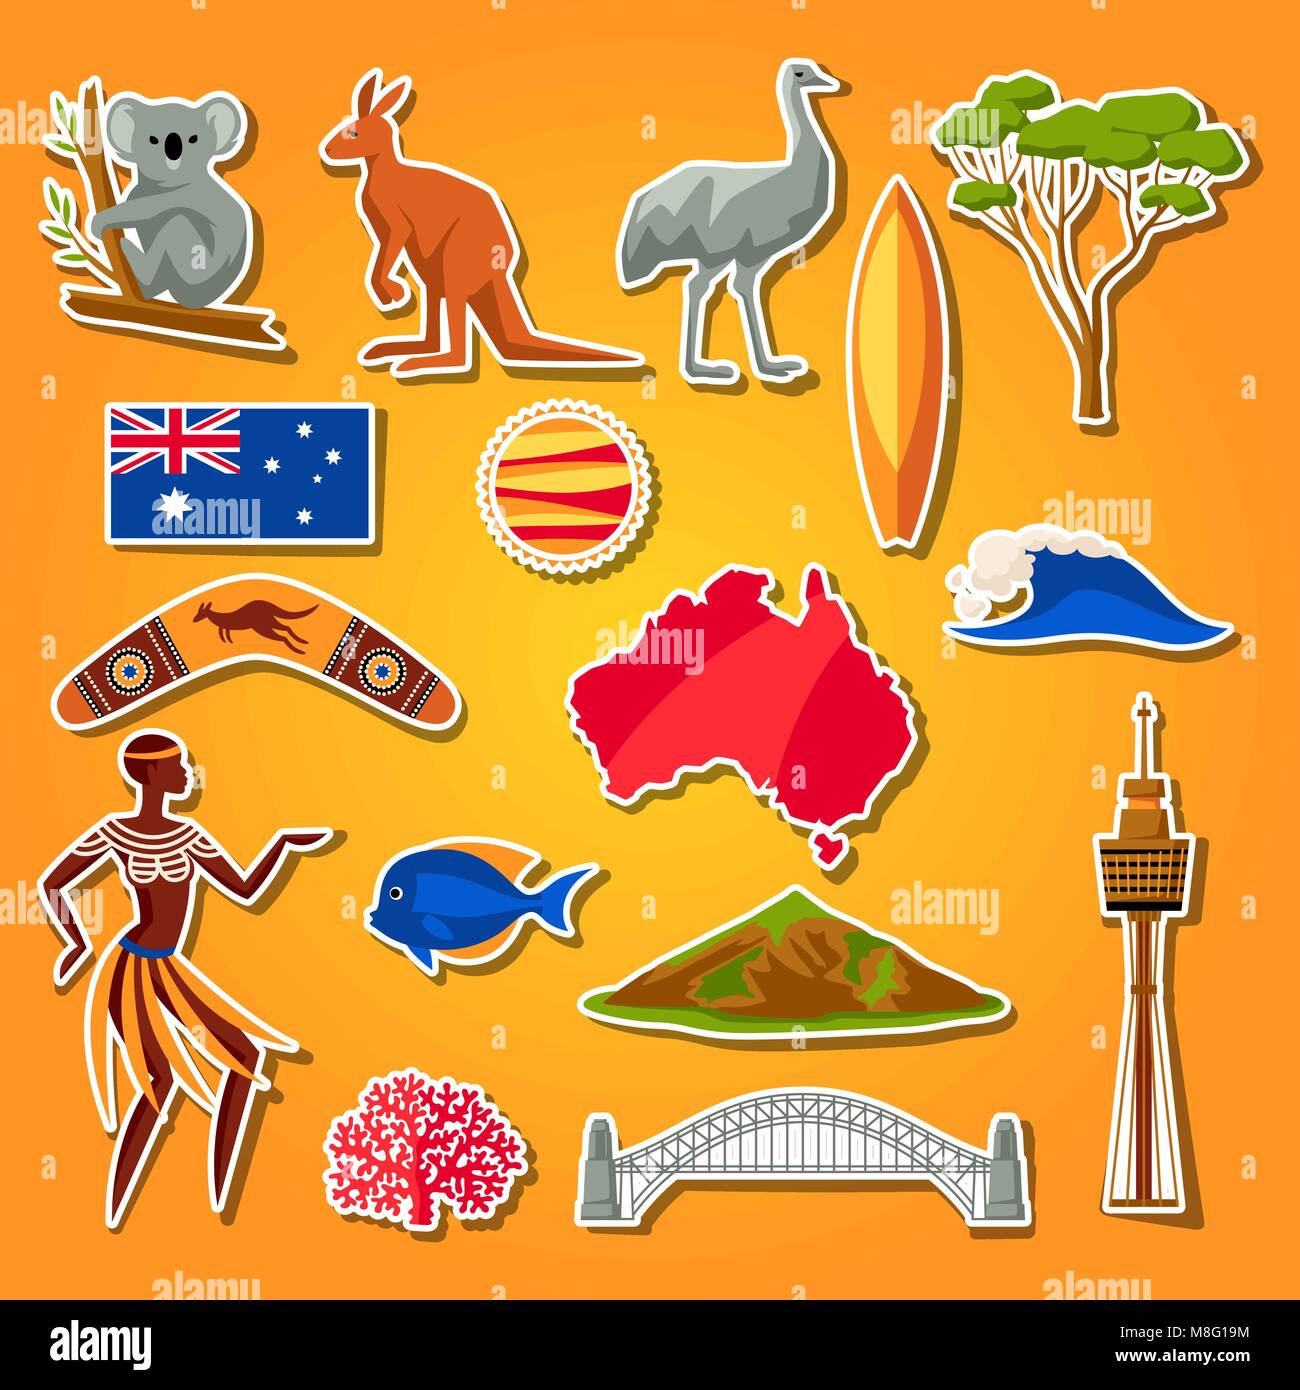 Australien Symbole gesetzt. Australische Aufkleber Symbole und Objekte Stock Vektor